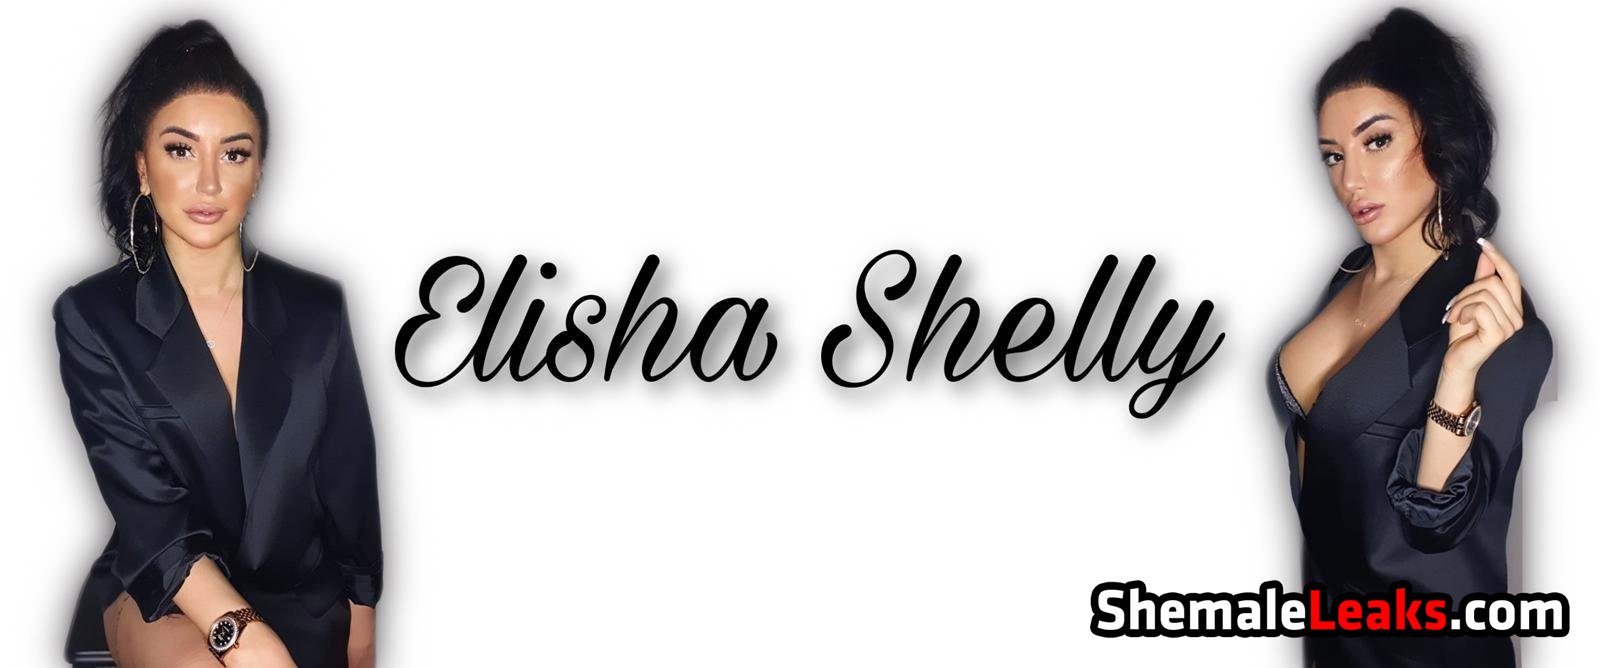 Ts Elisha  – elishashelly OnlyFans Leaks (22 Photos and 2 Videos)